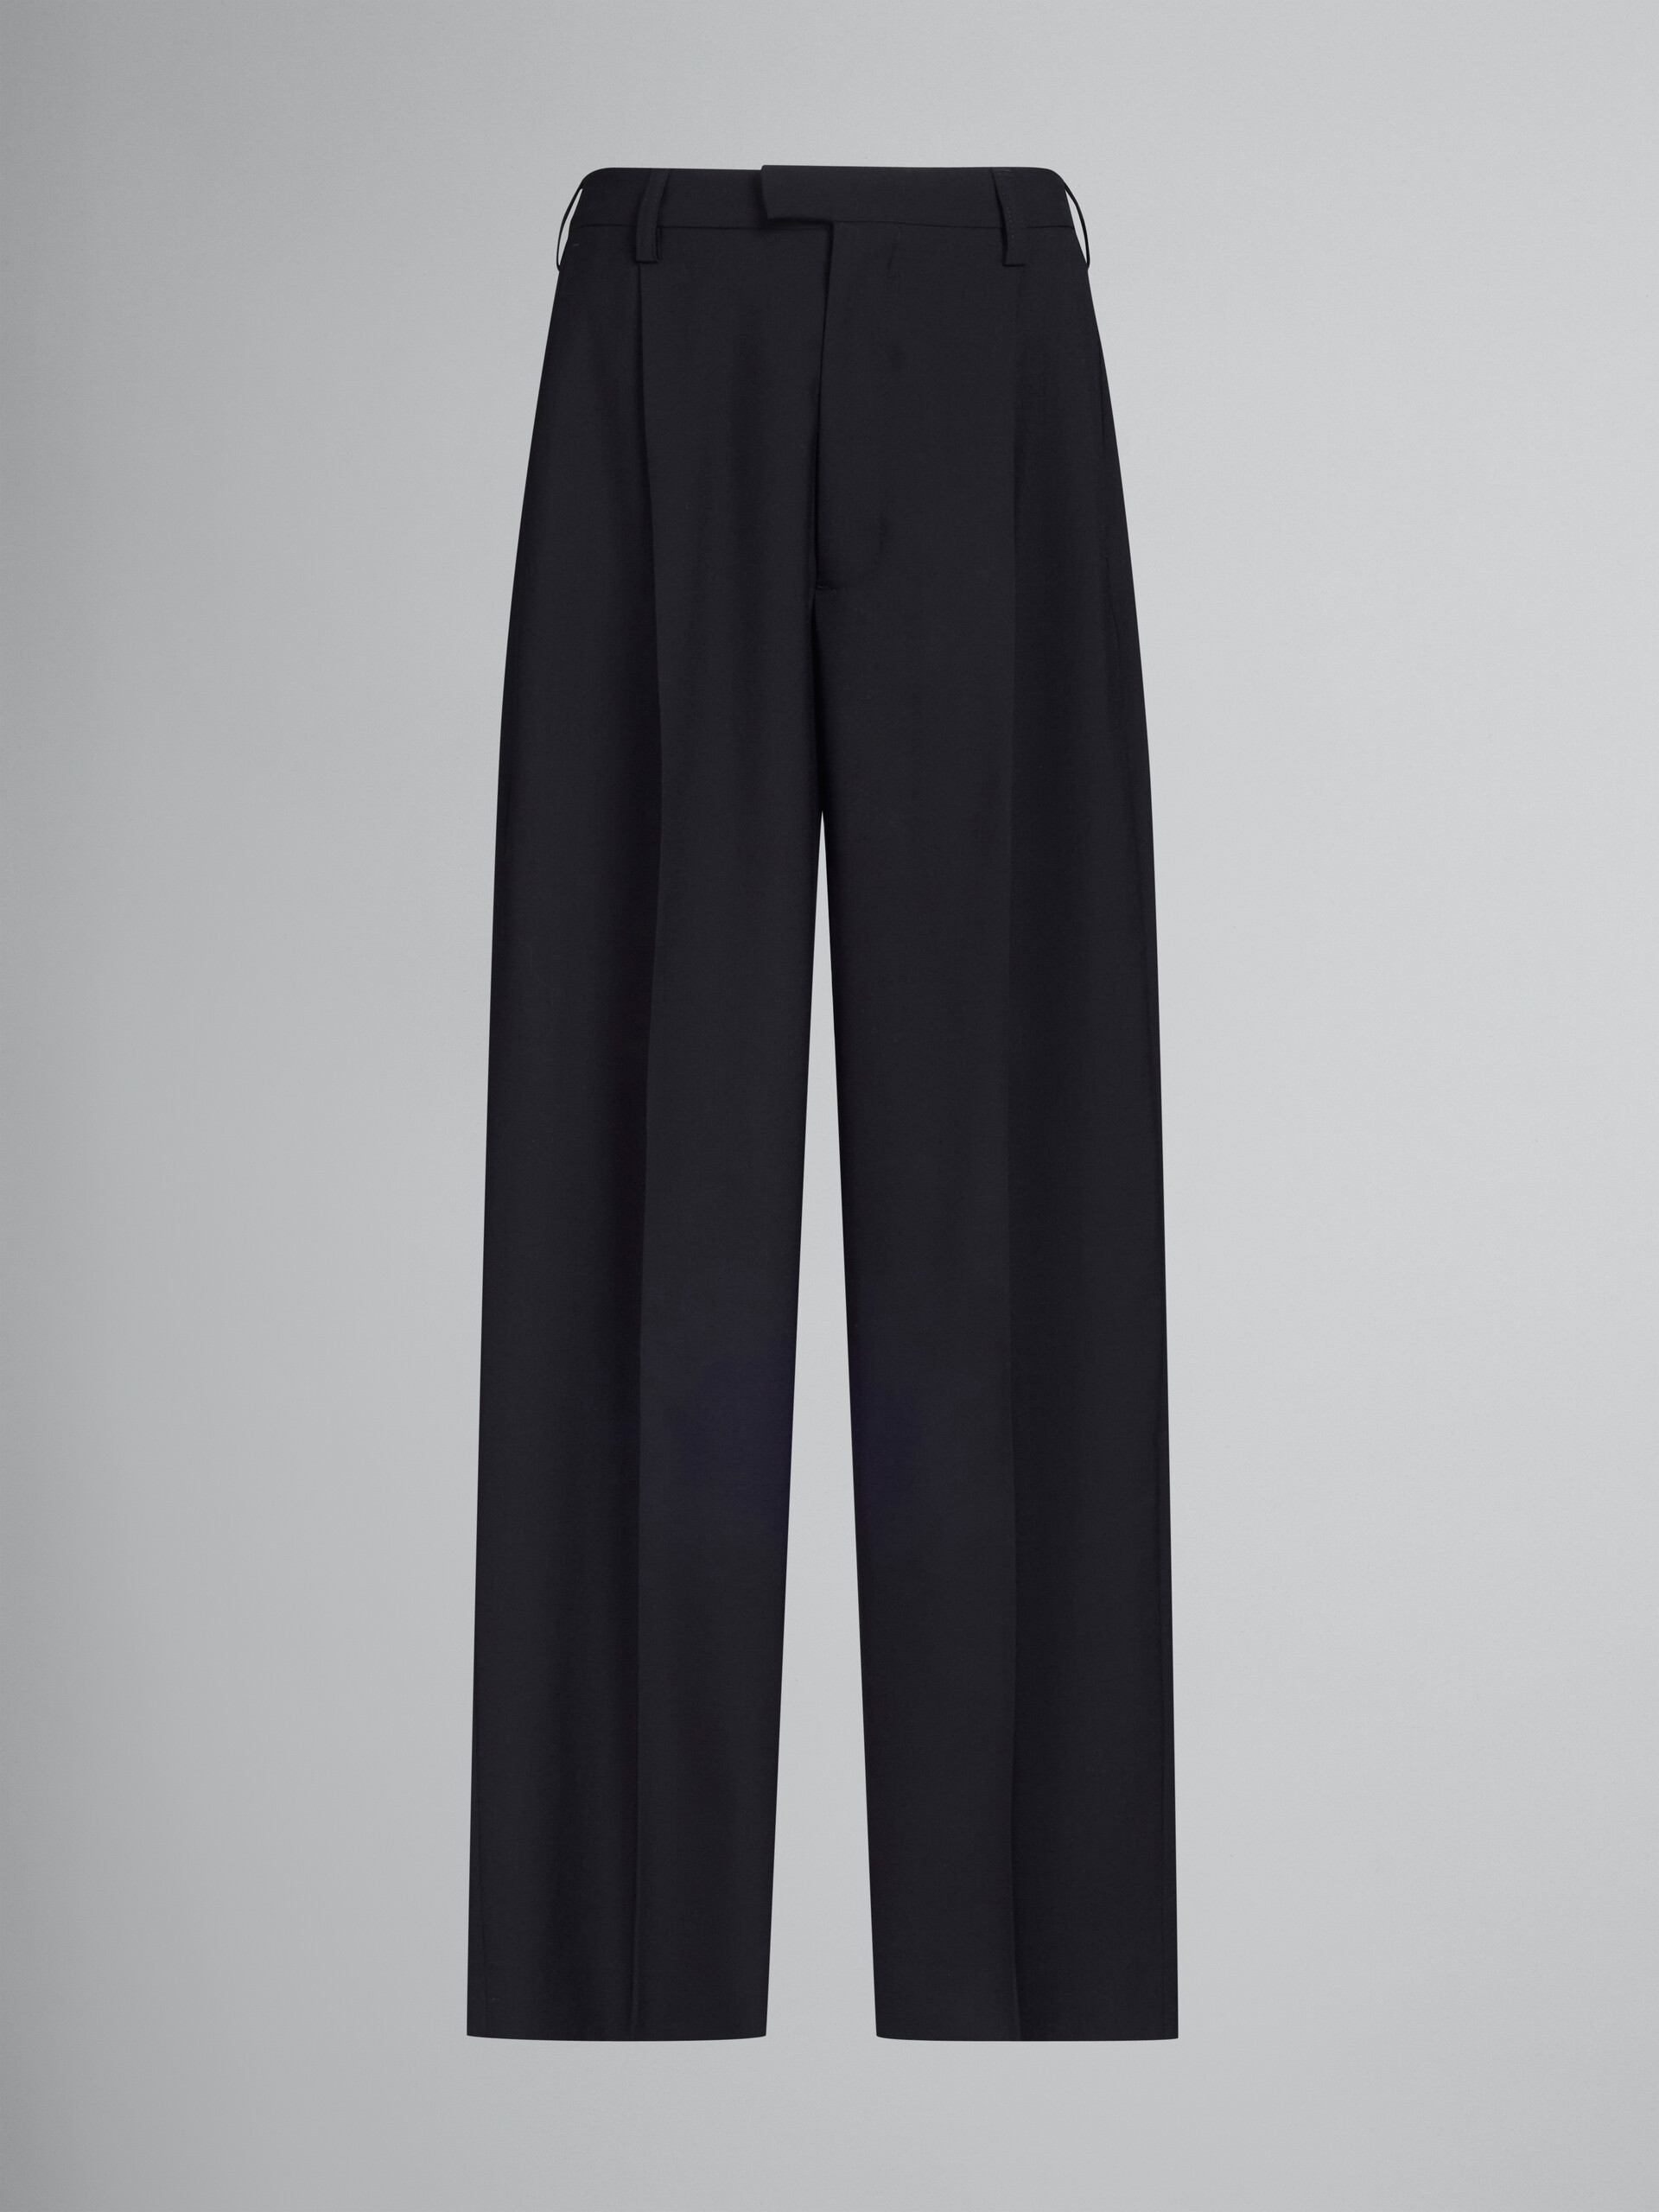 Pantalon ajusté en laine tropicale noire - Pantalons - Image 1